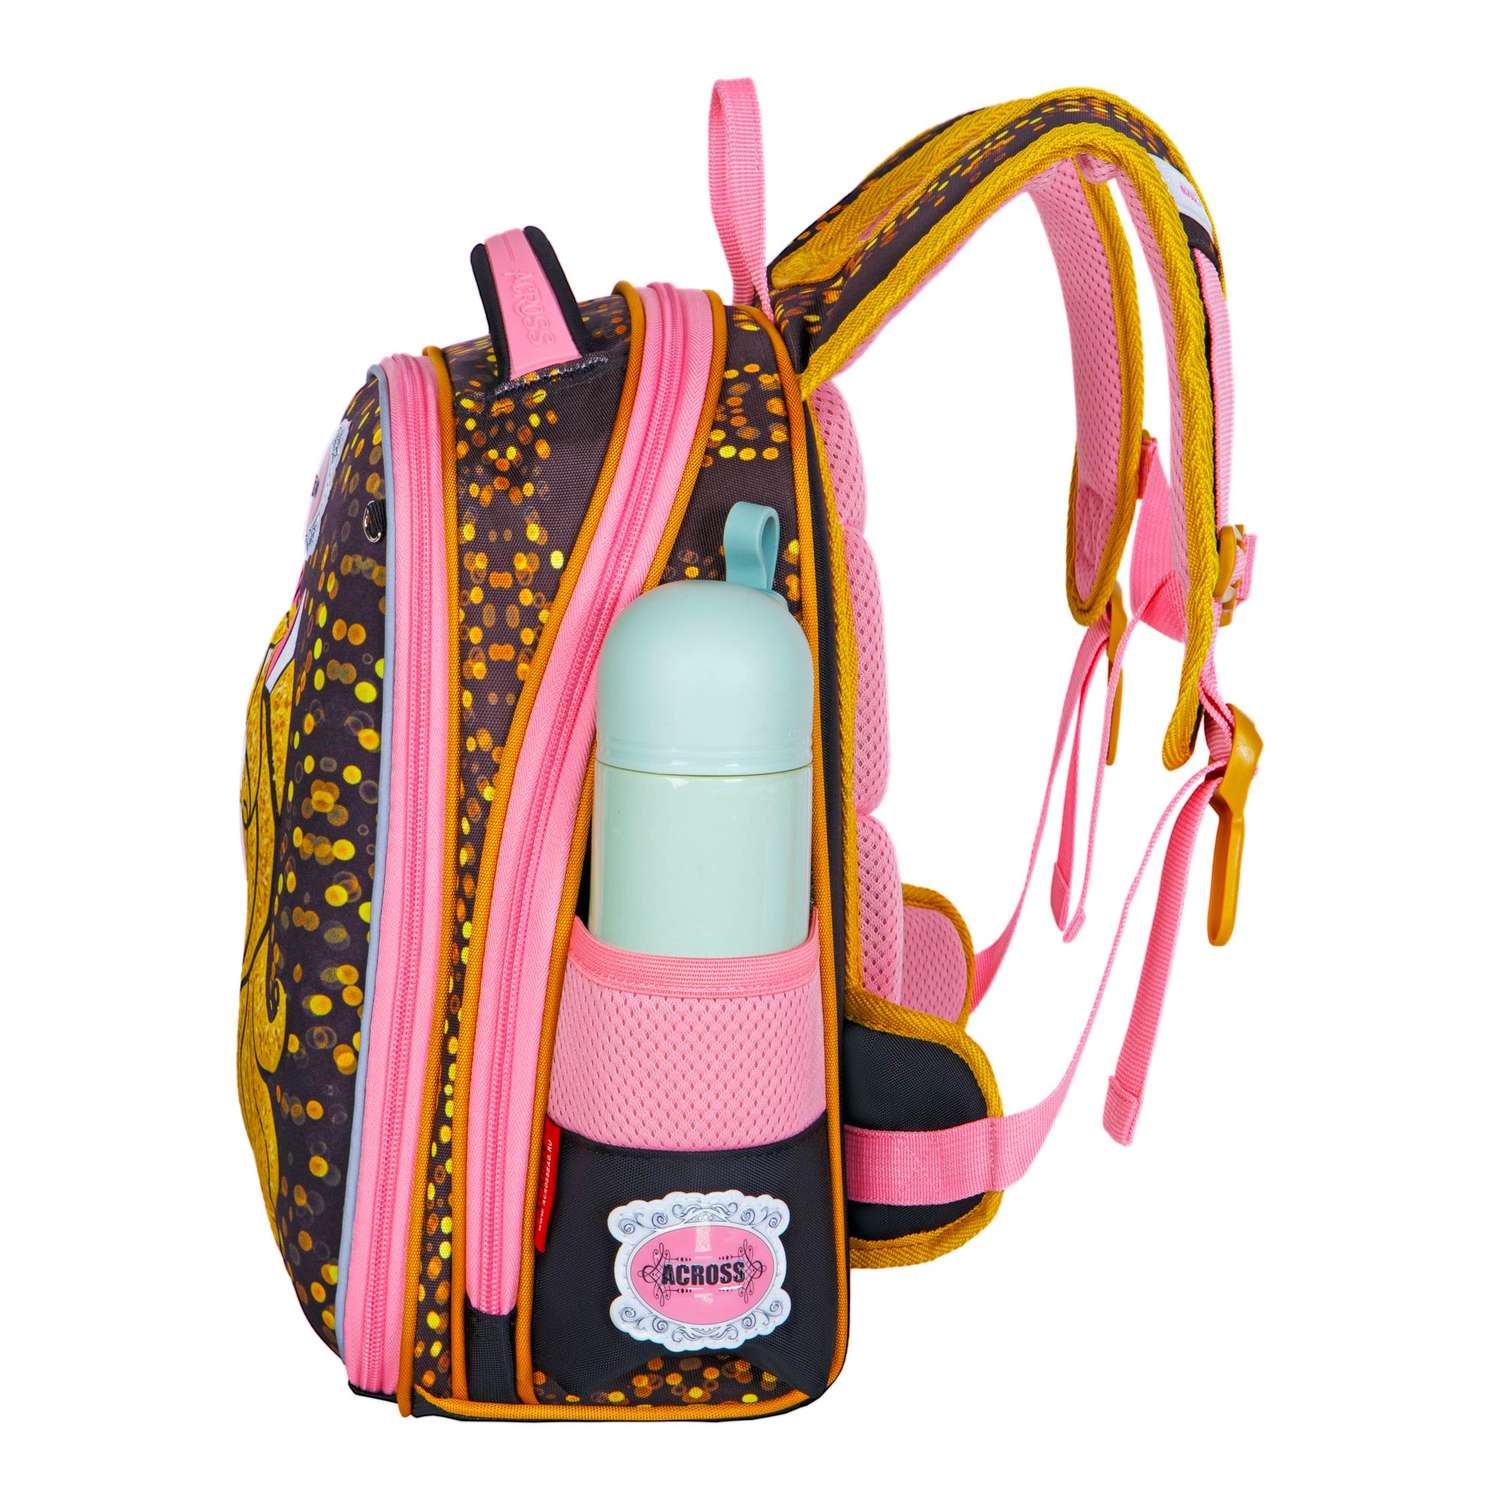 Рюкзак школьный ACROSS с наполнением: мешочек для обуви каркасный пенал и брелок - фото 7